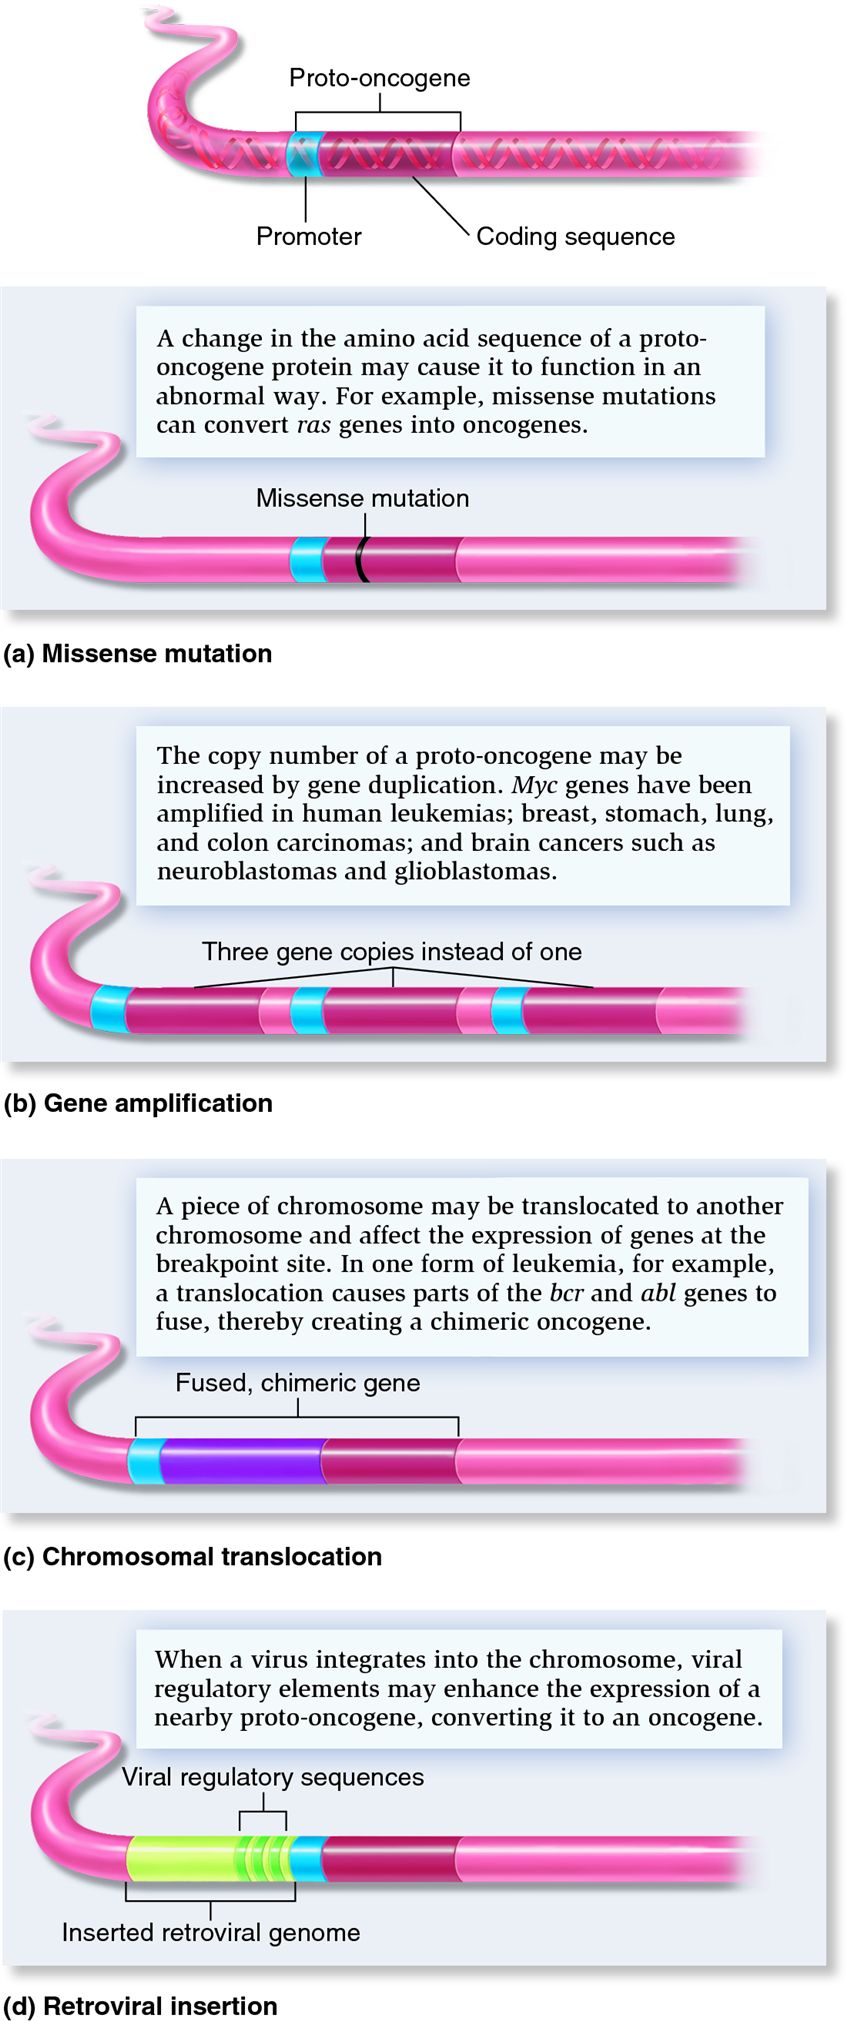 Genetic changes that convert proto-oncogenes to oncogenes